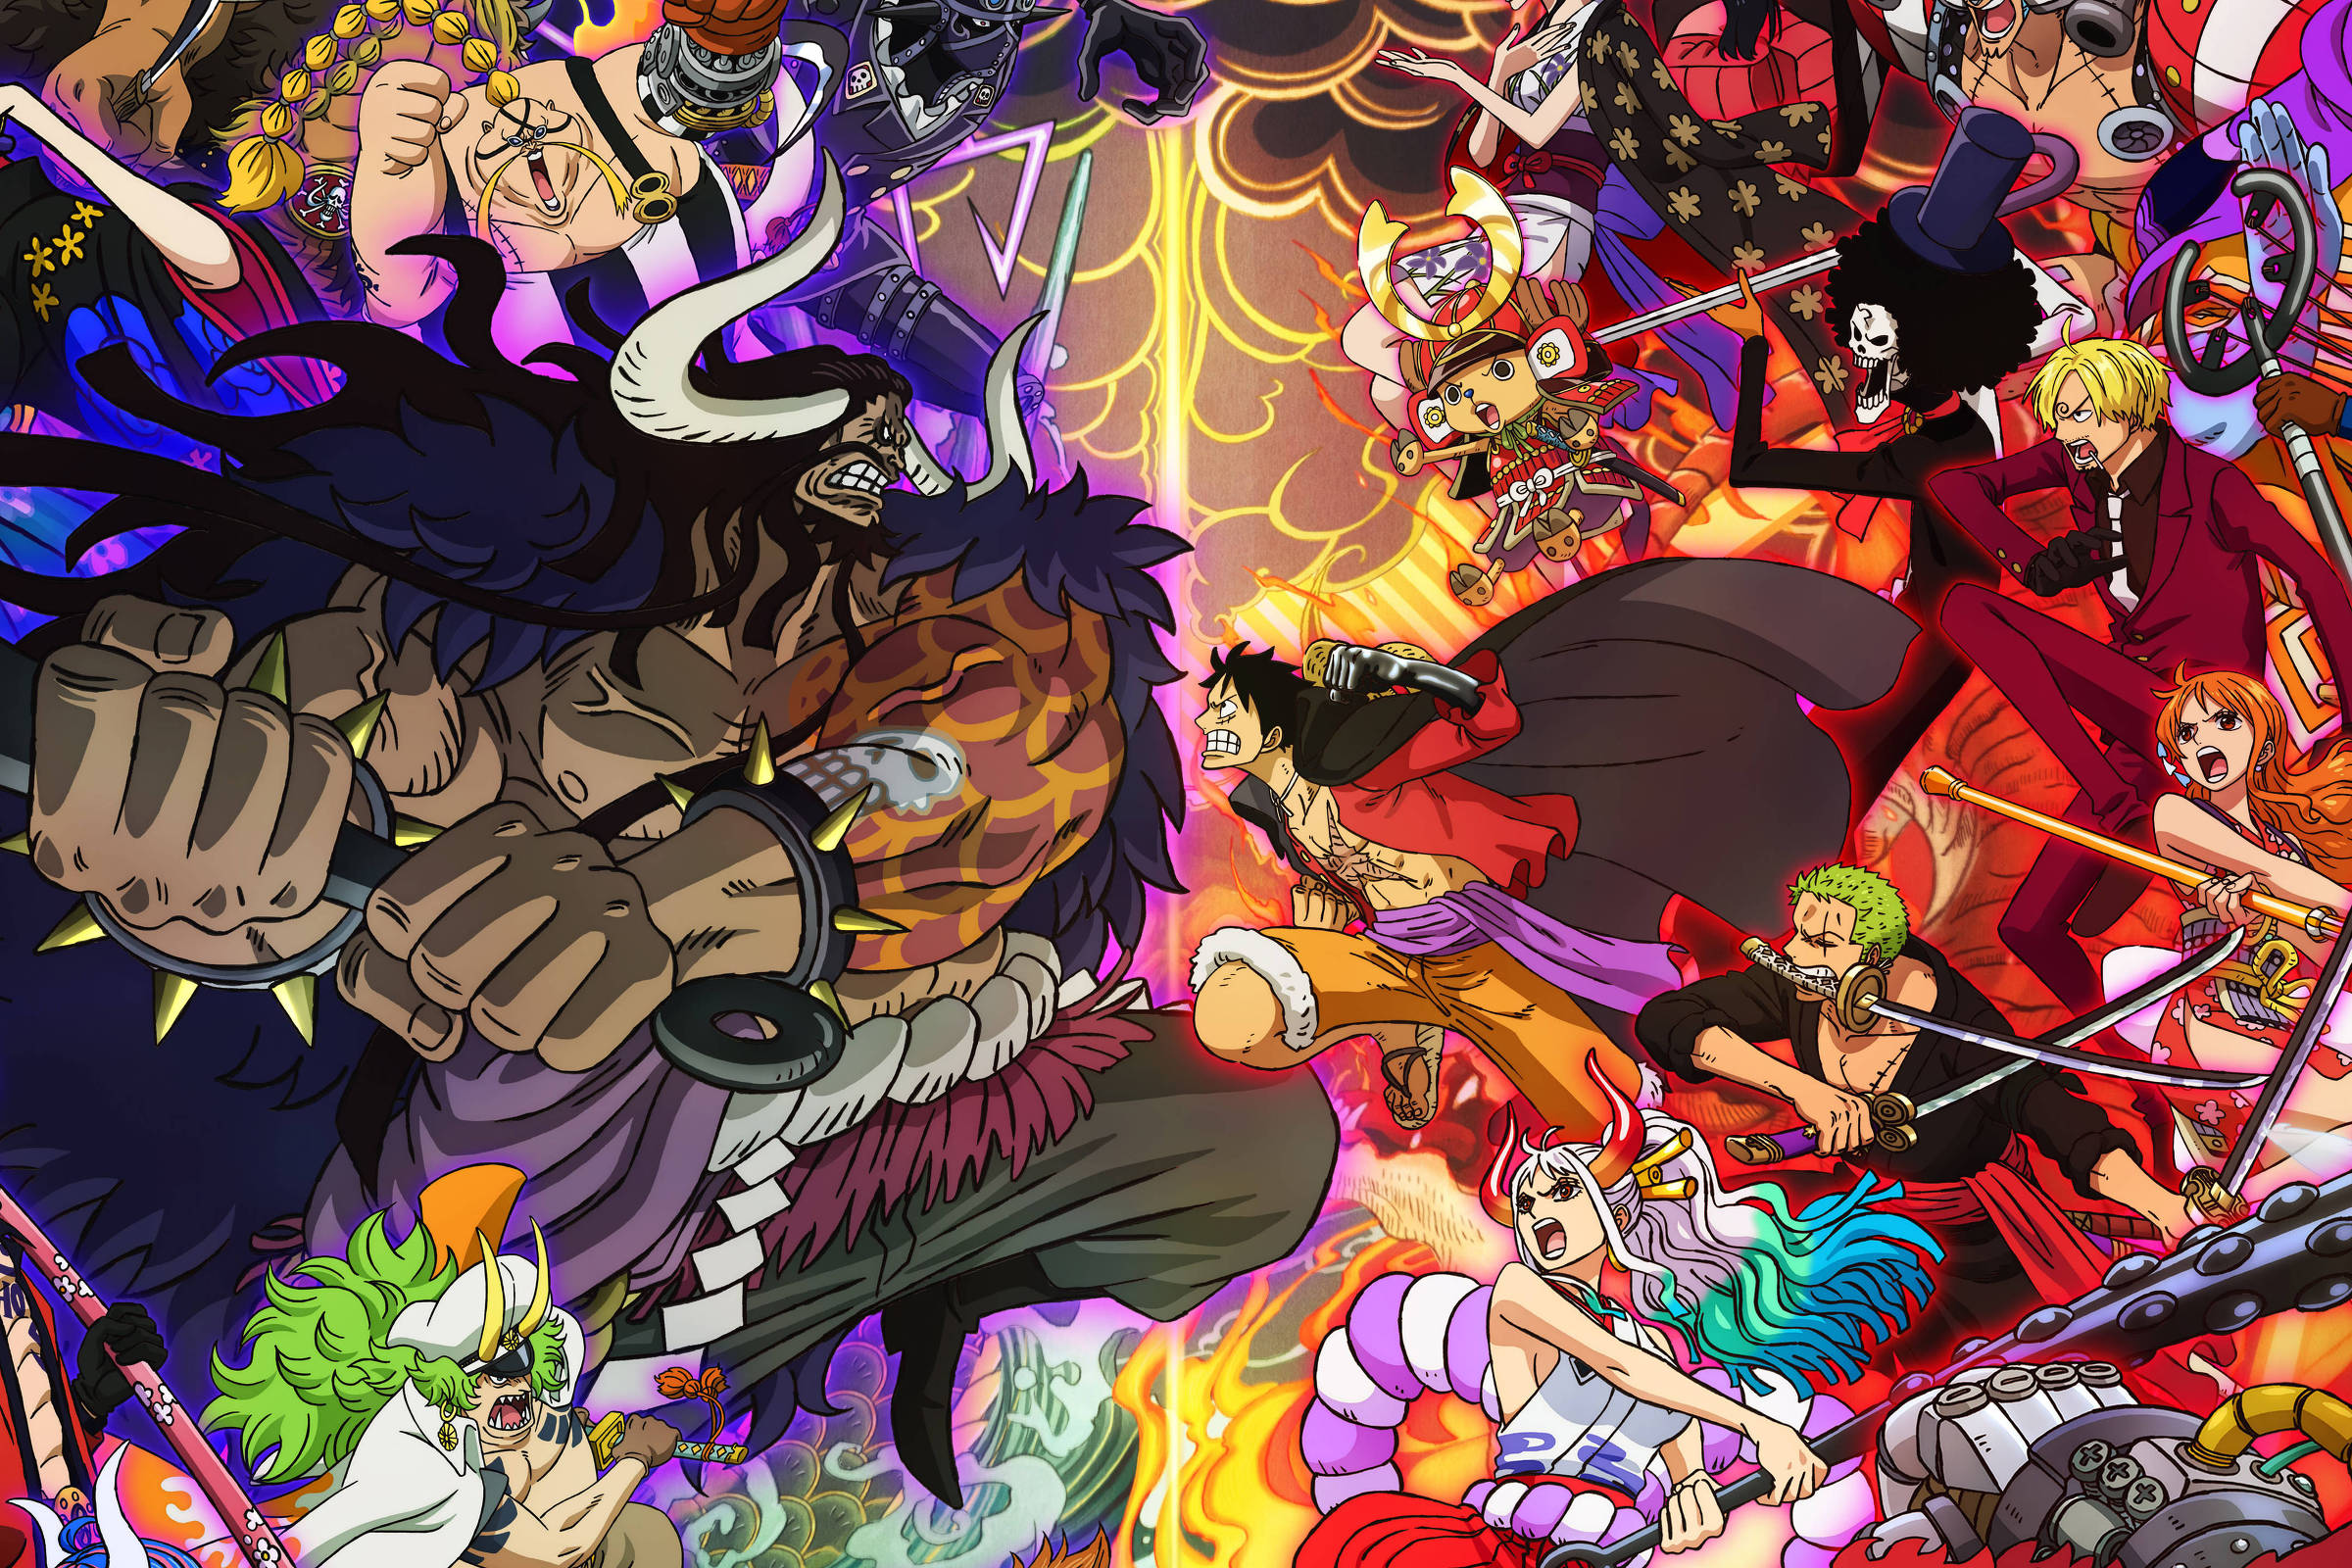 One Piece chega ao milésimo episódio neste sábado (20), assista ao